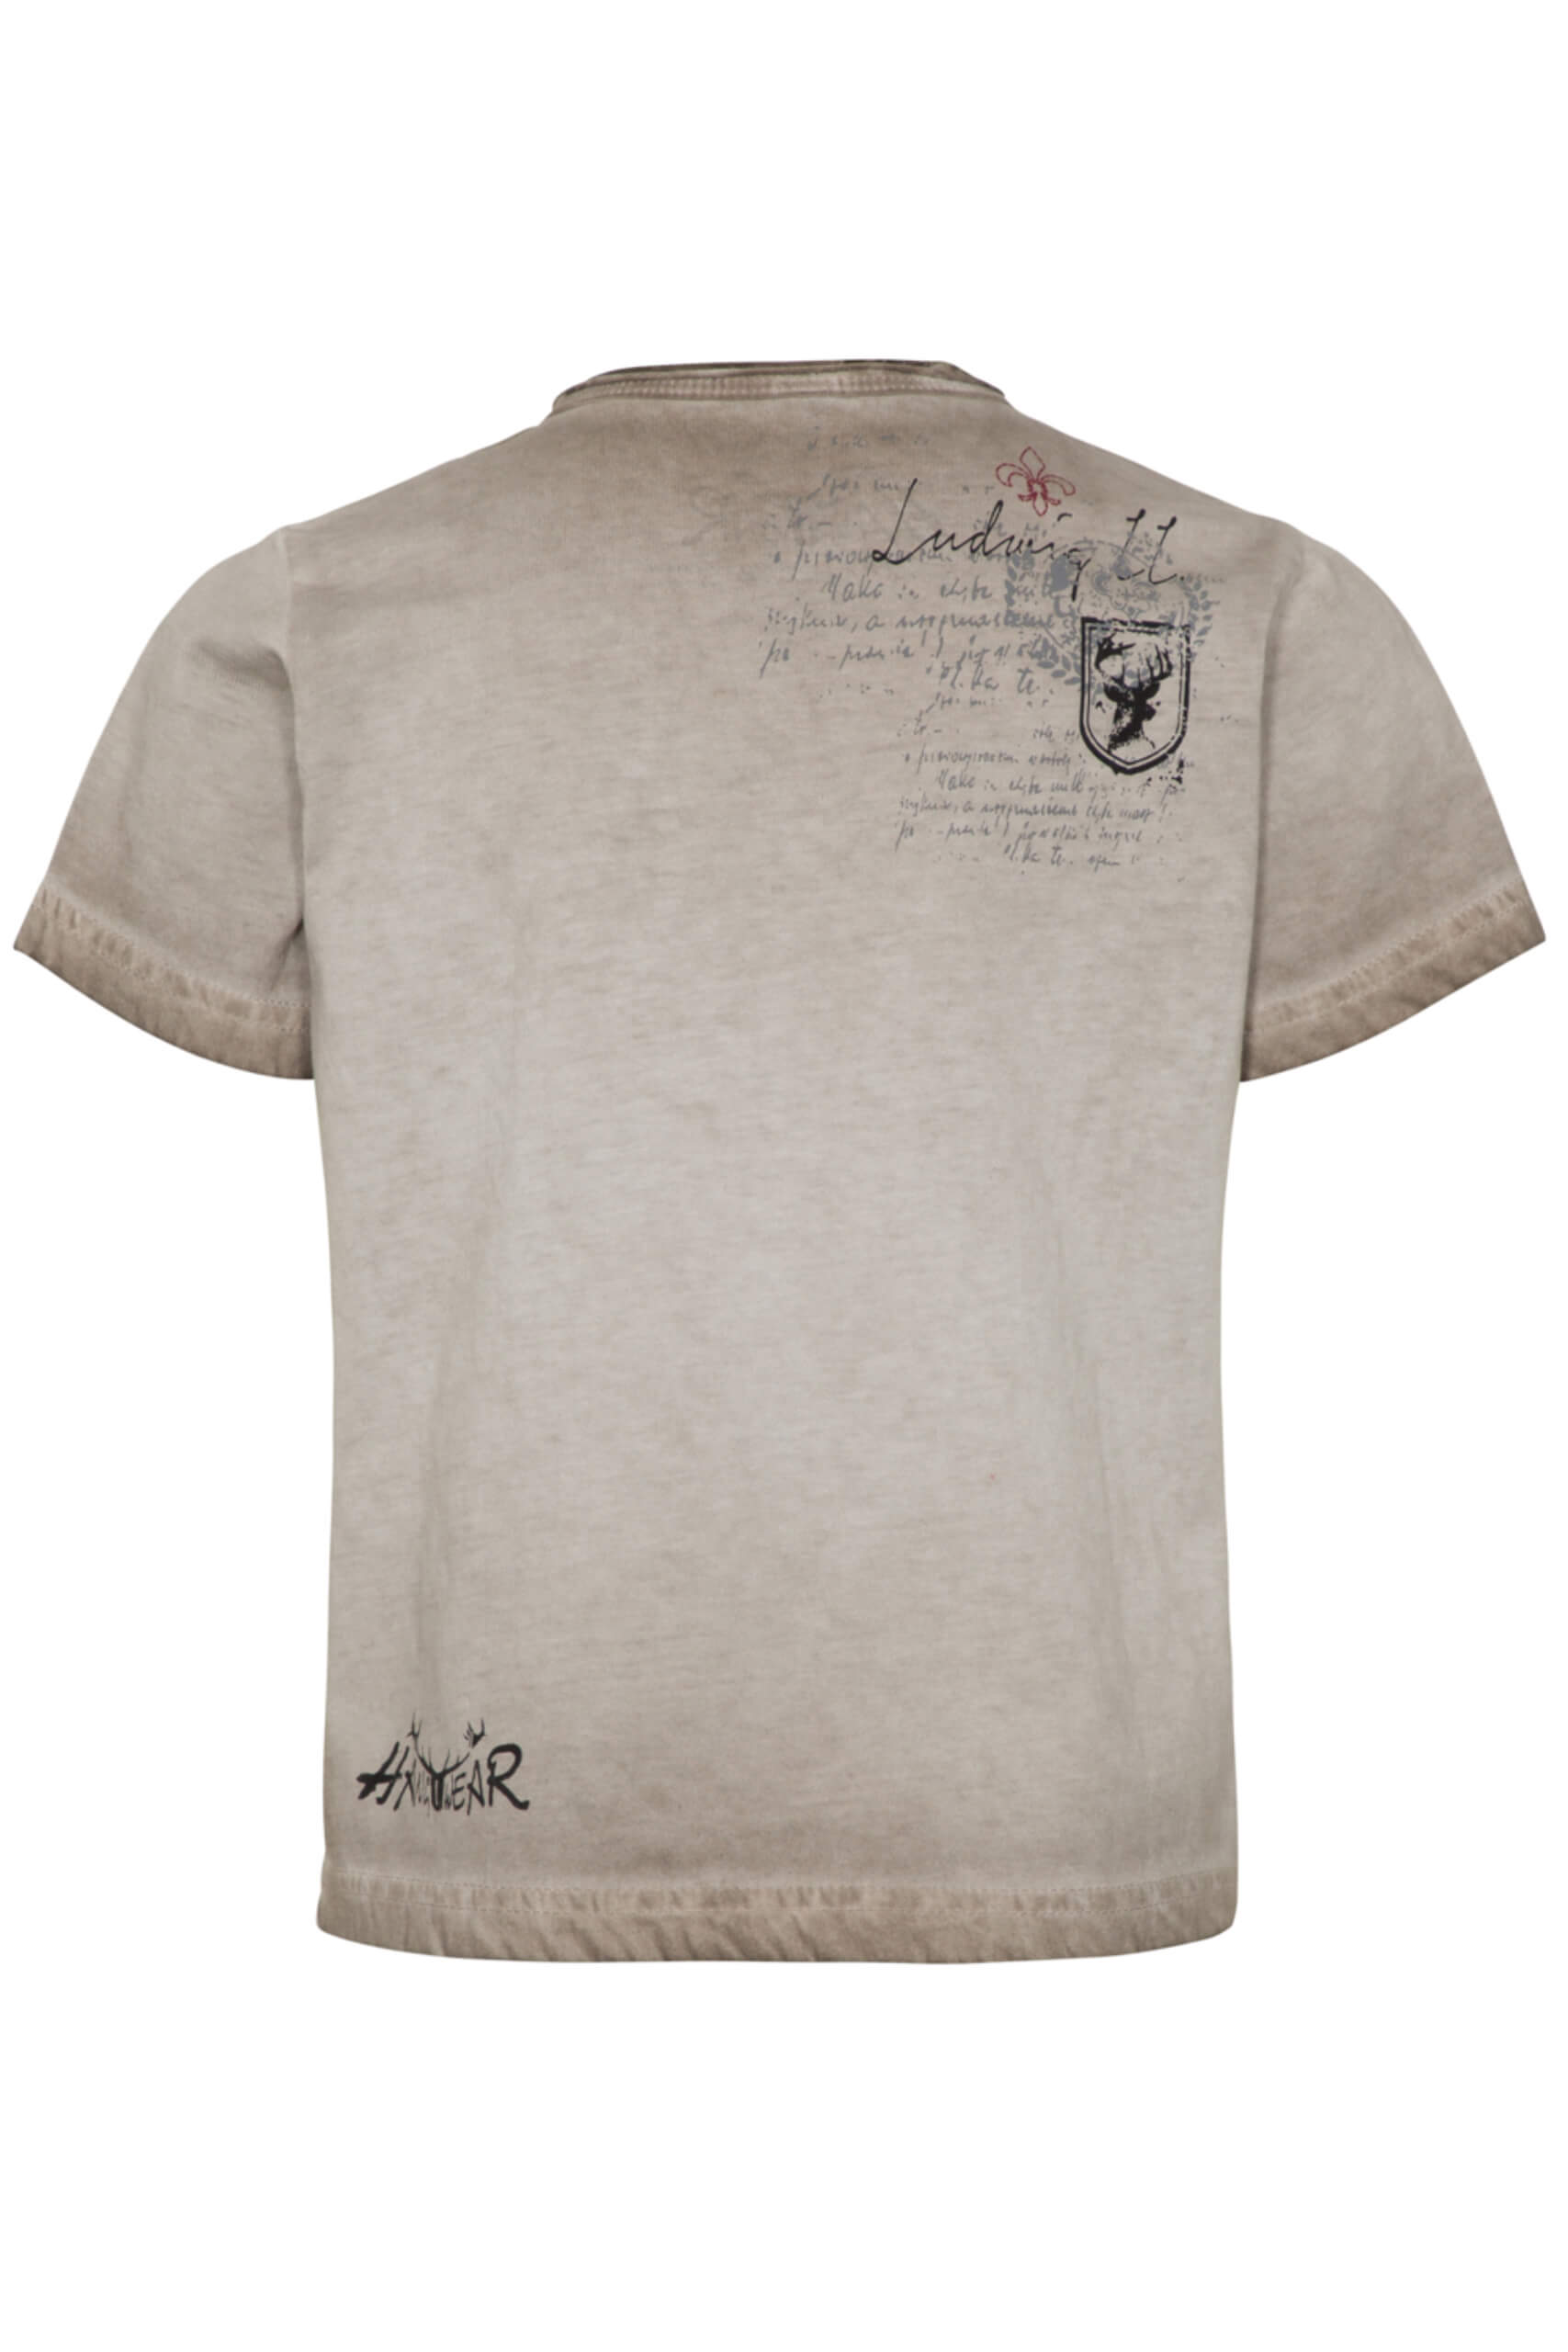 Hangowear T-Shirt Almont Kid`s 11891 70892 Gr 134/140 Beige 0101